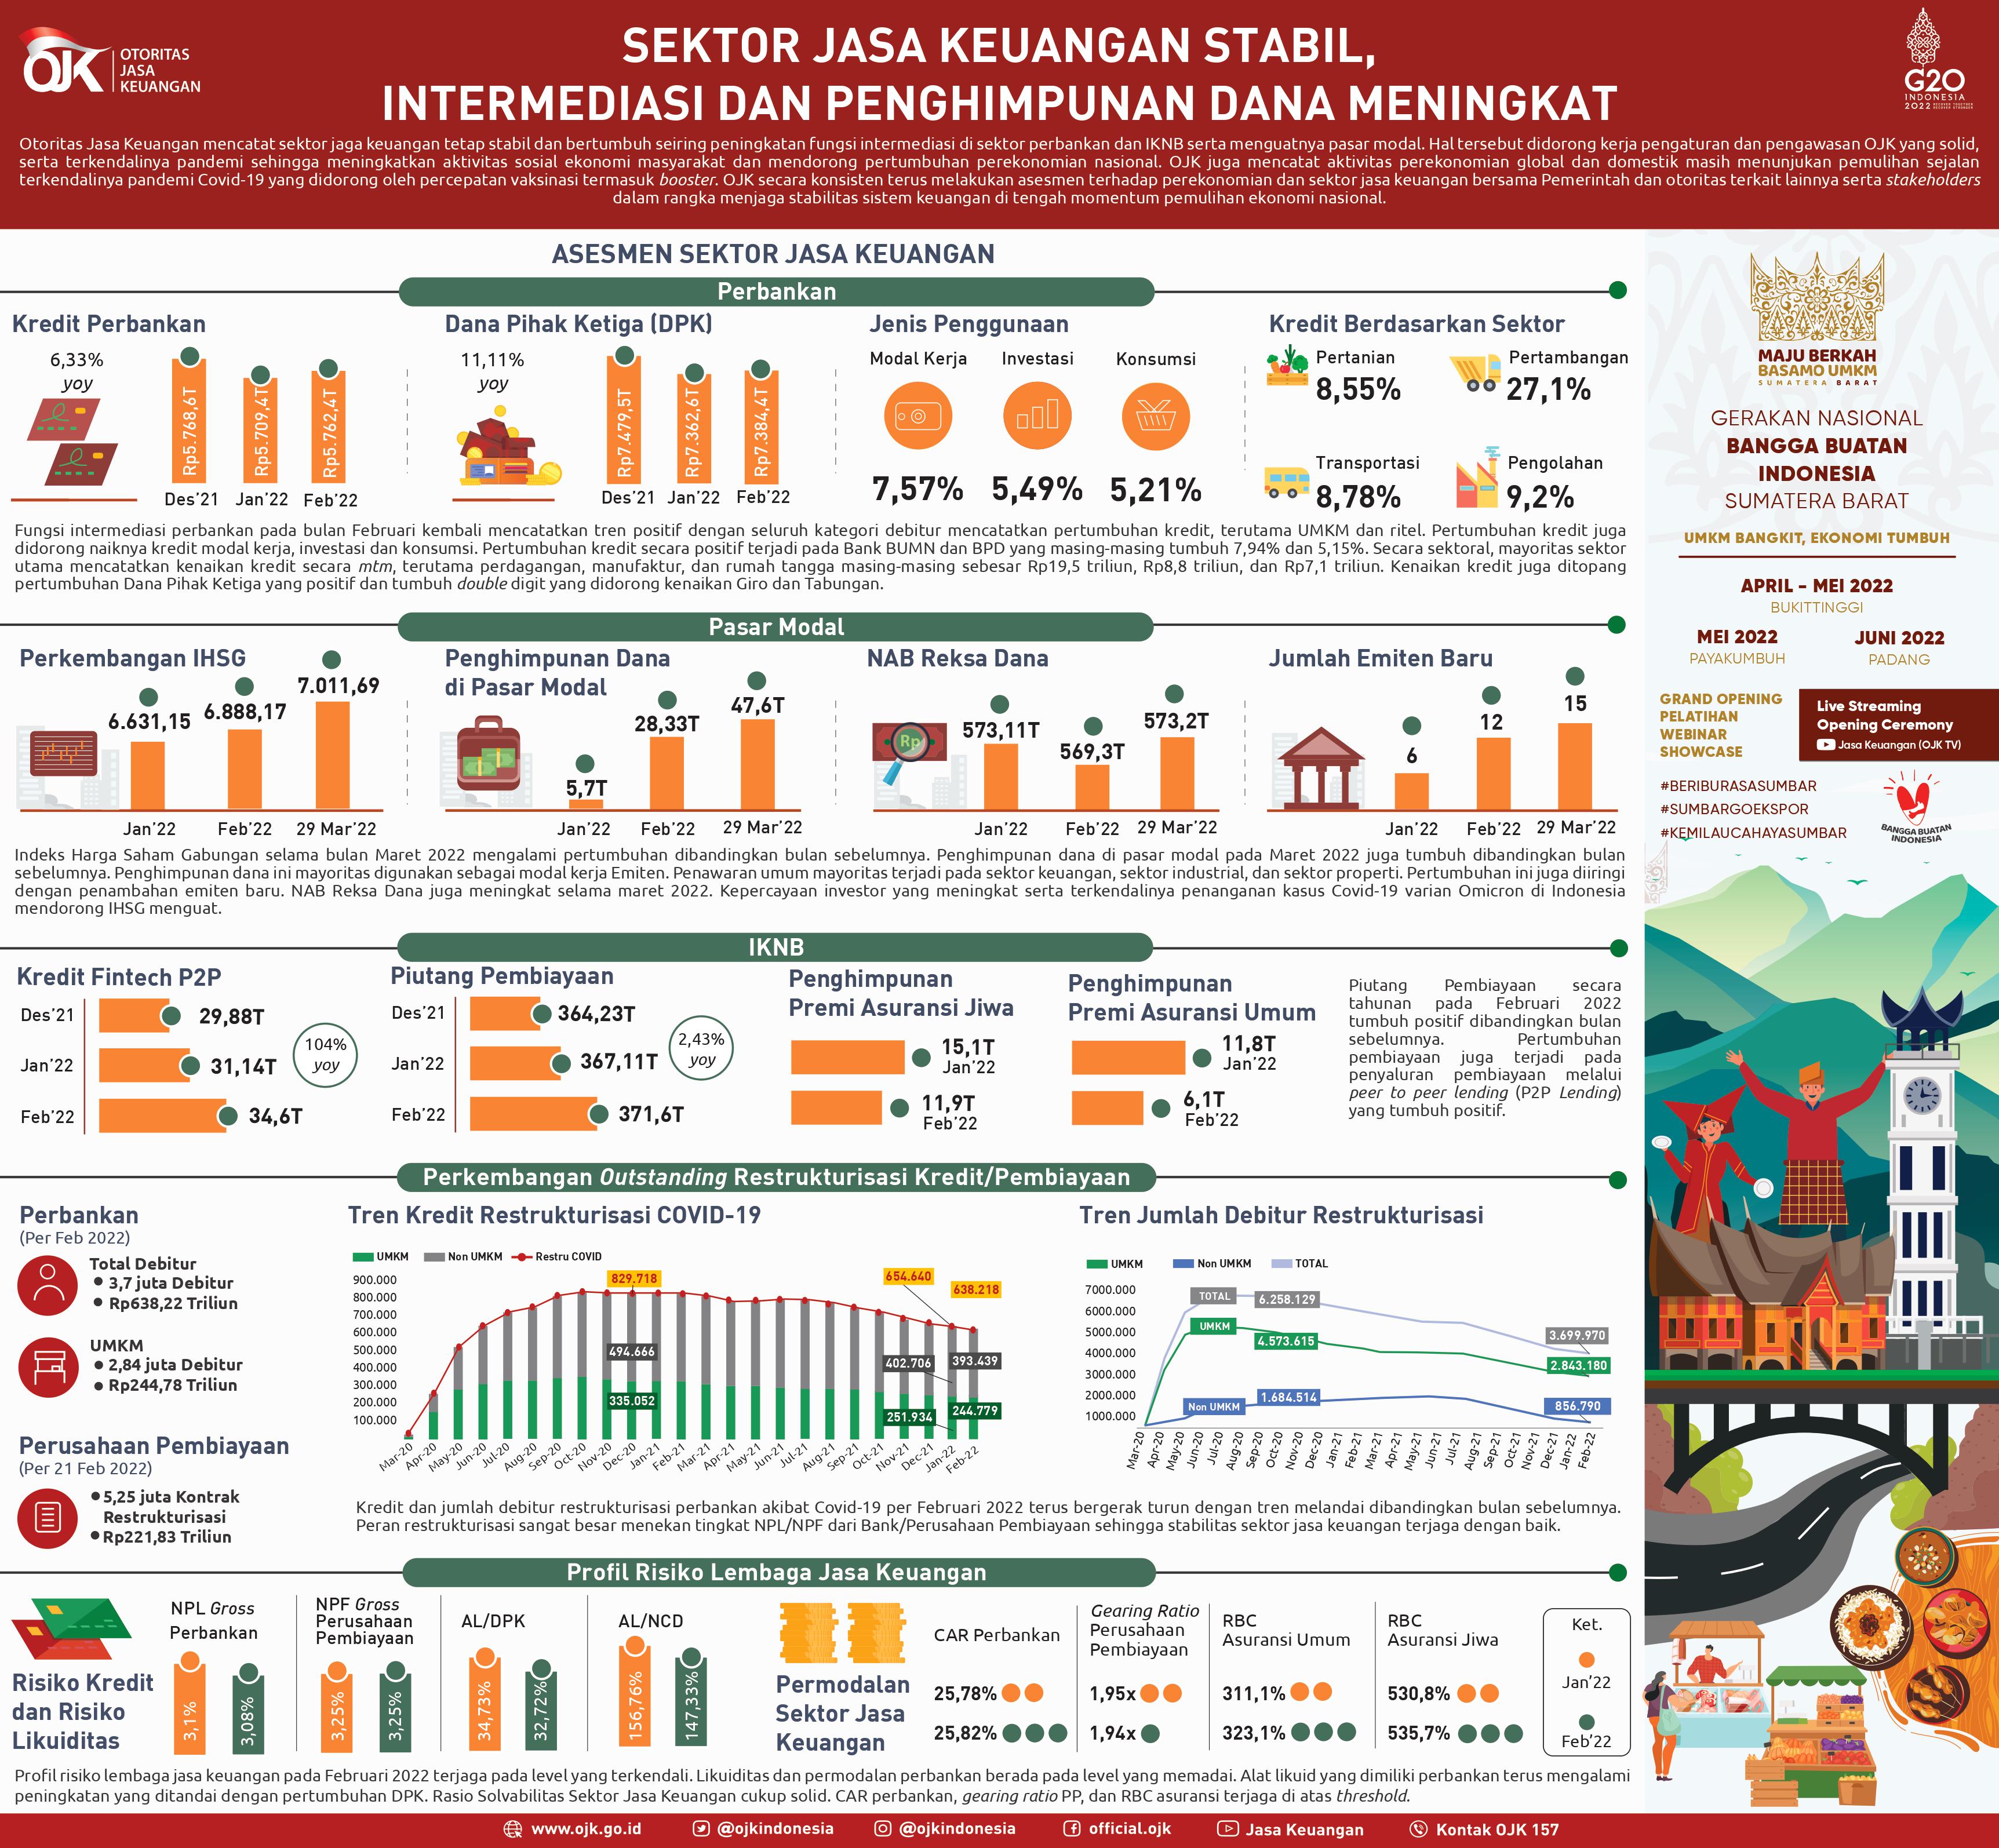 Infografis Sektor Jasa Keuangan Stabil, Intermediasi dan Penghimpunan Dana Meningkat.jpg